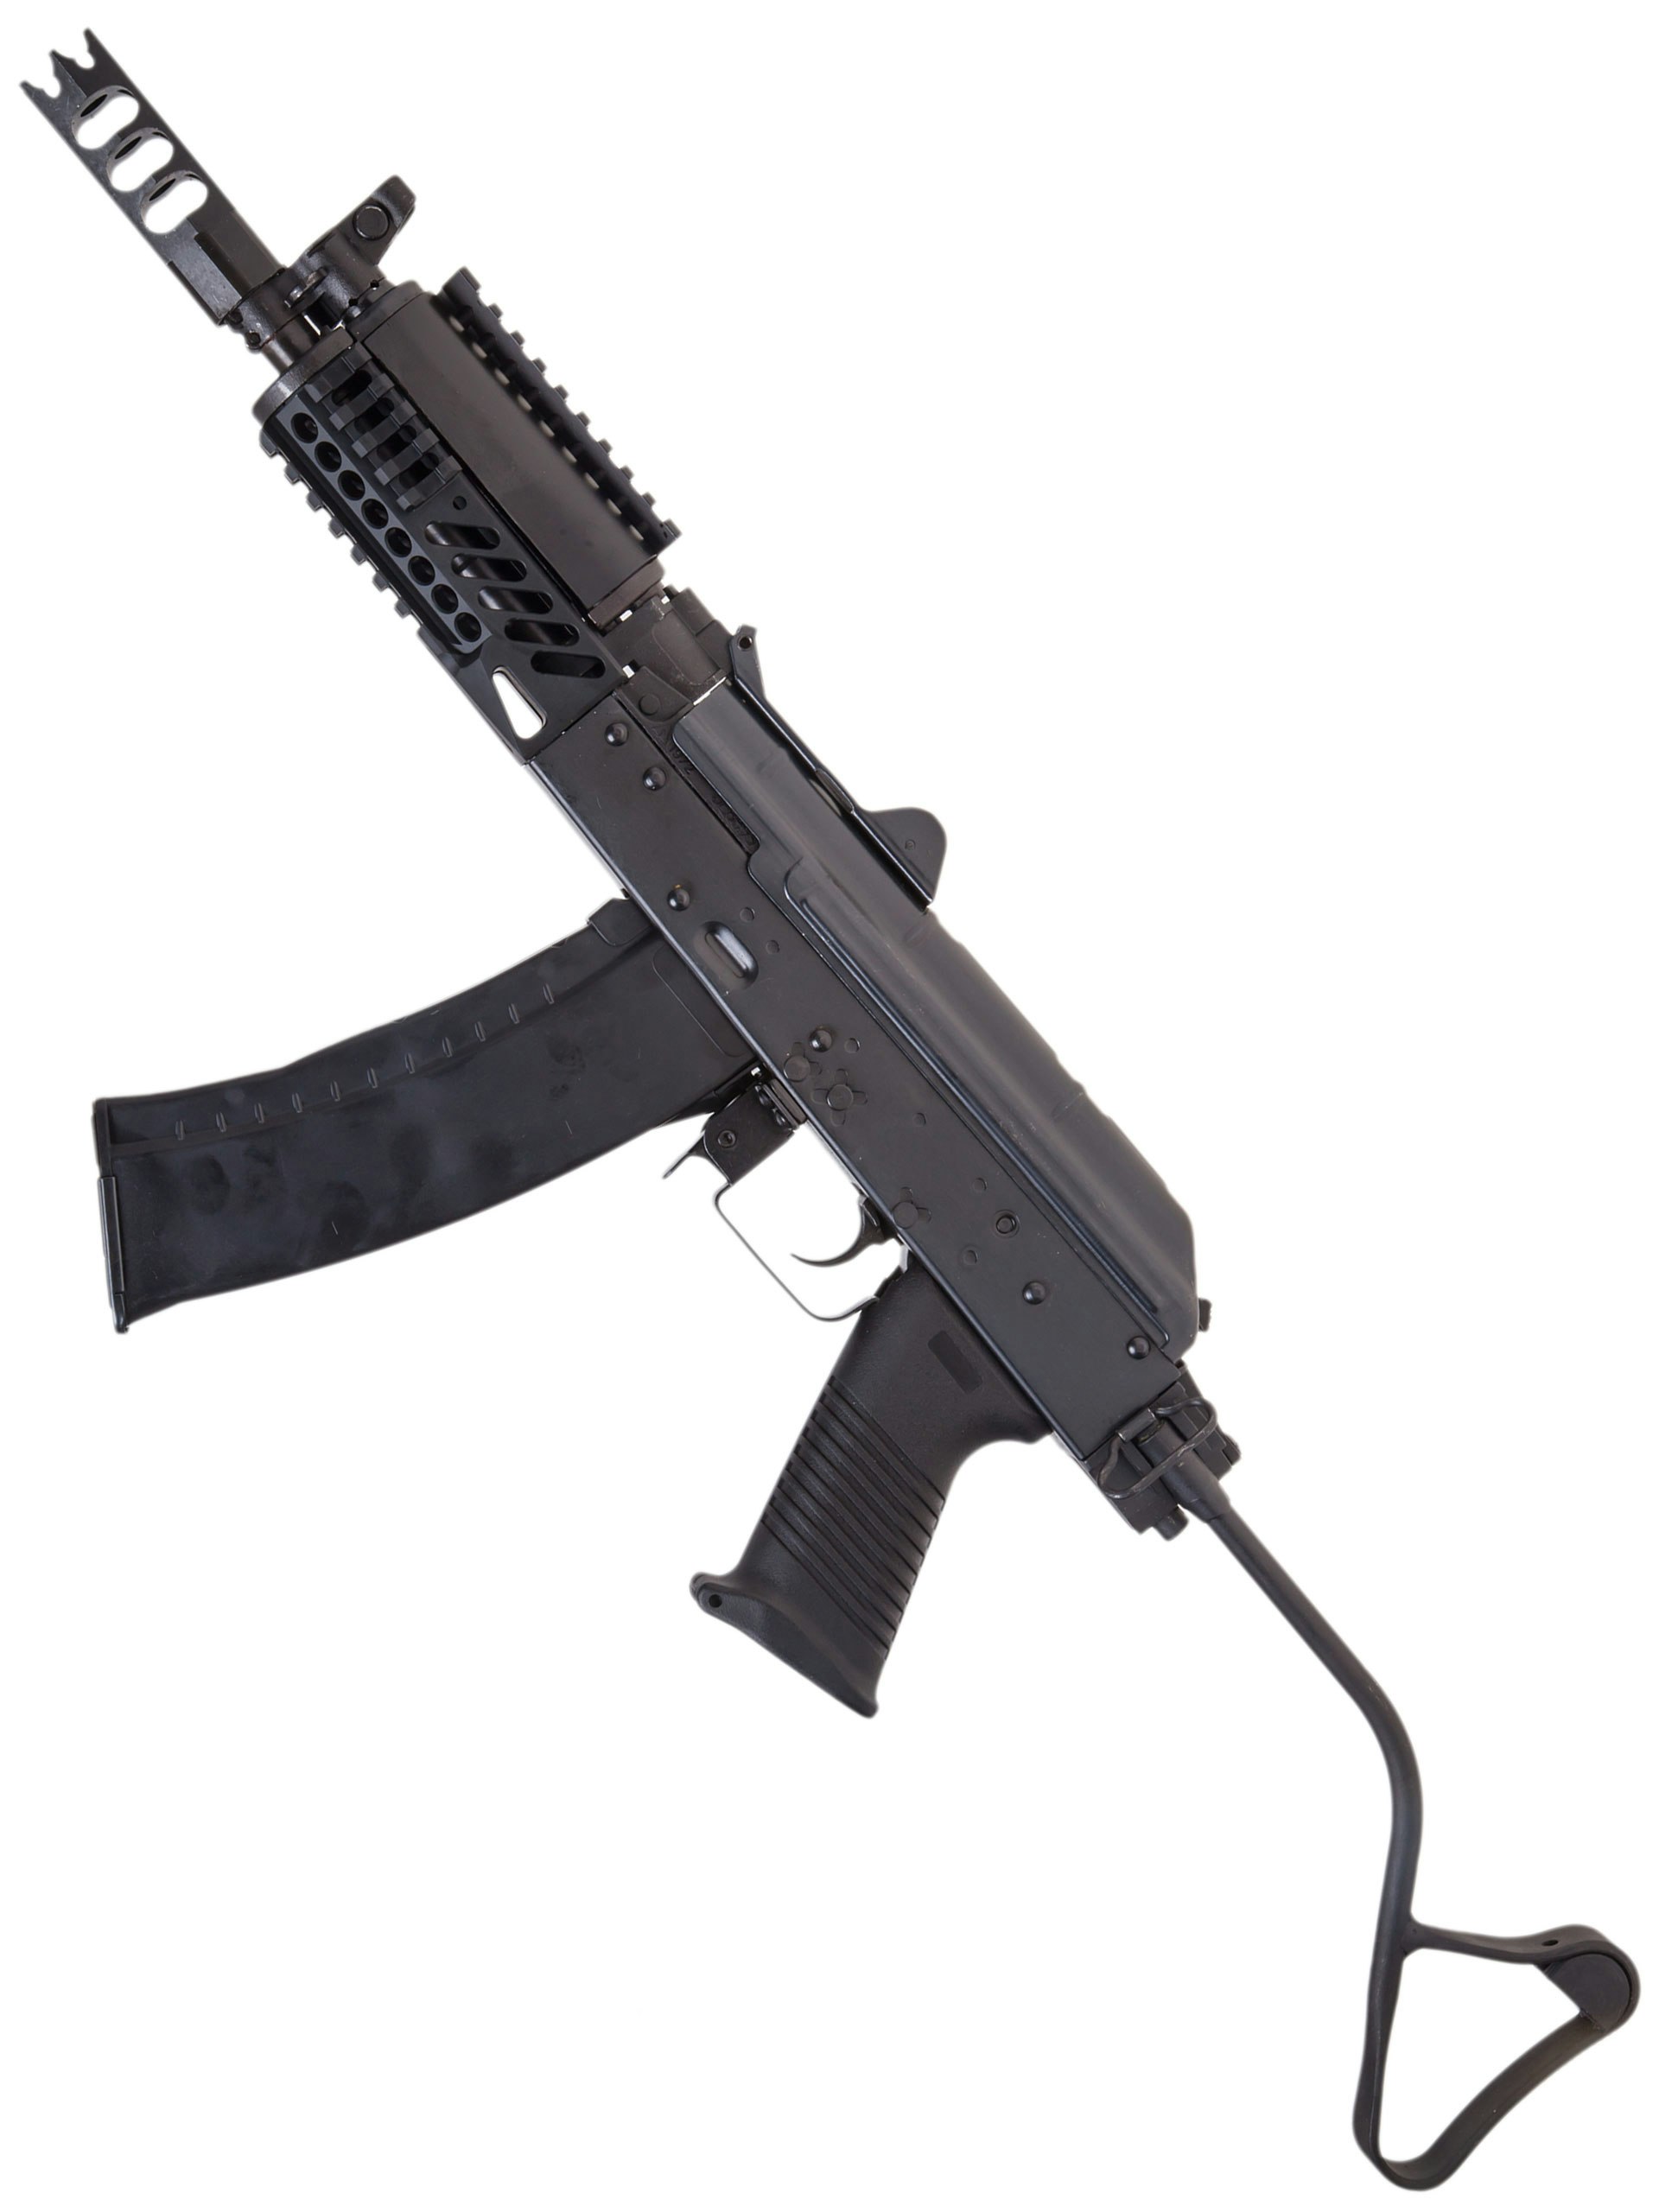 Cybergun Kalashnikov Akm